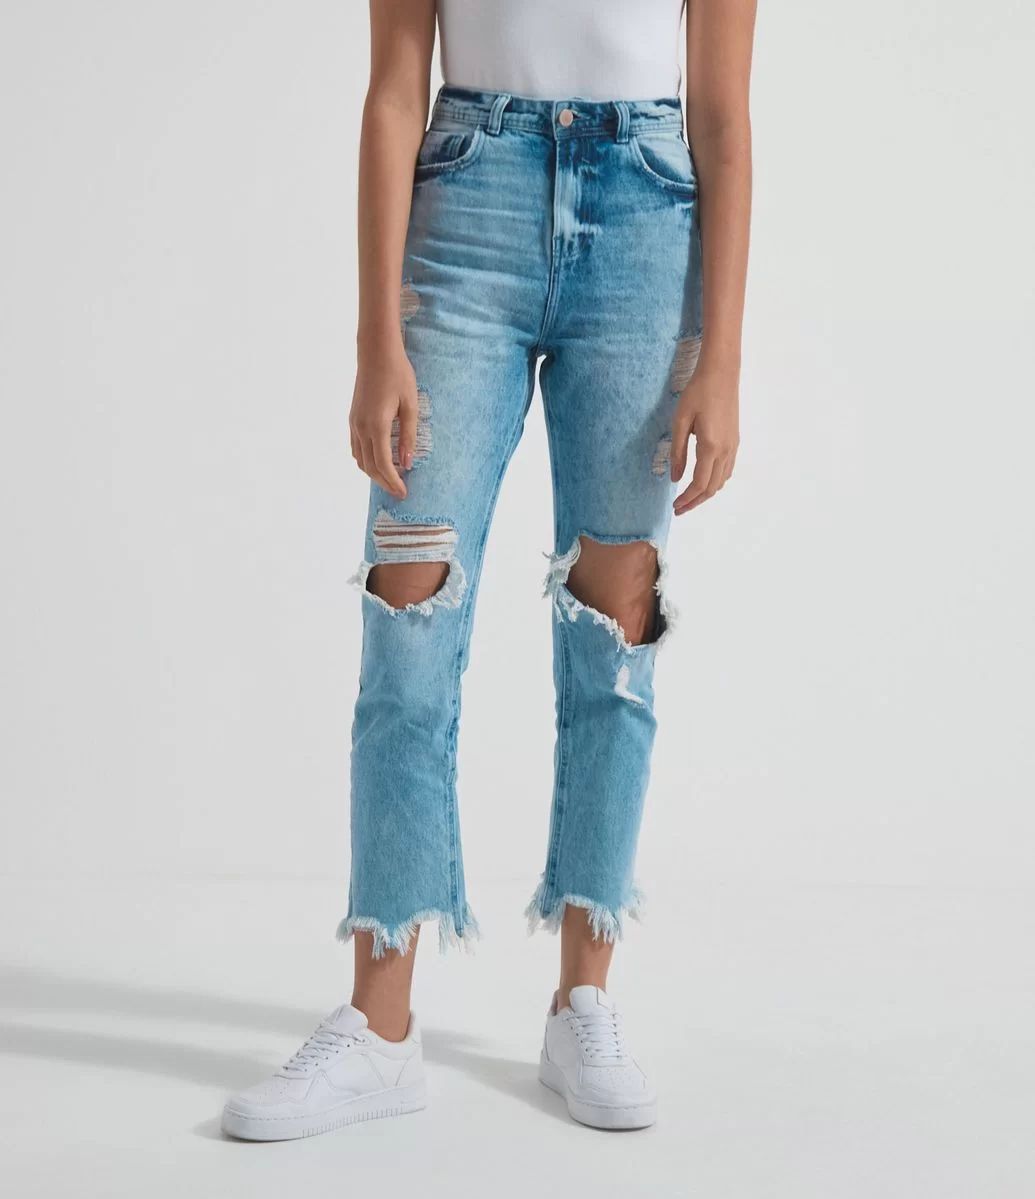 Calça Reta Jeans Lisa com Rasgos e Barra Desfiada Azul - Lojas Renner | Lojas Renner BR